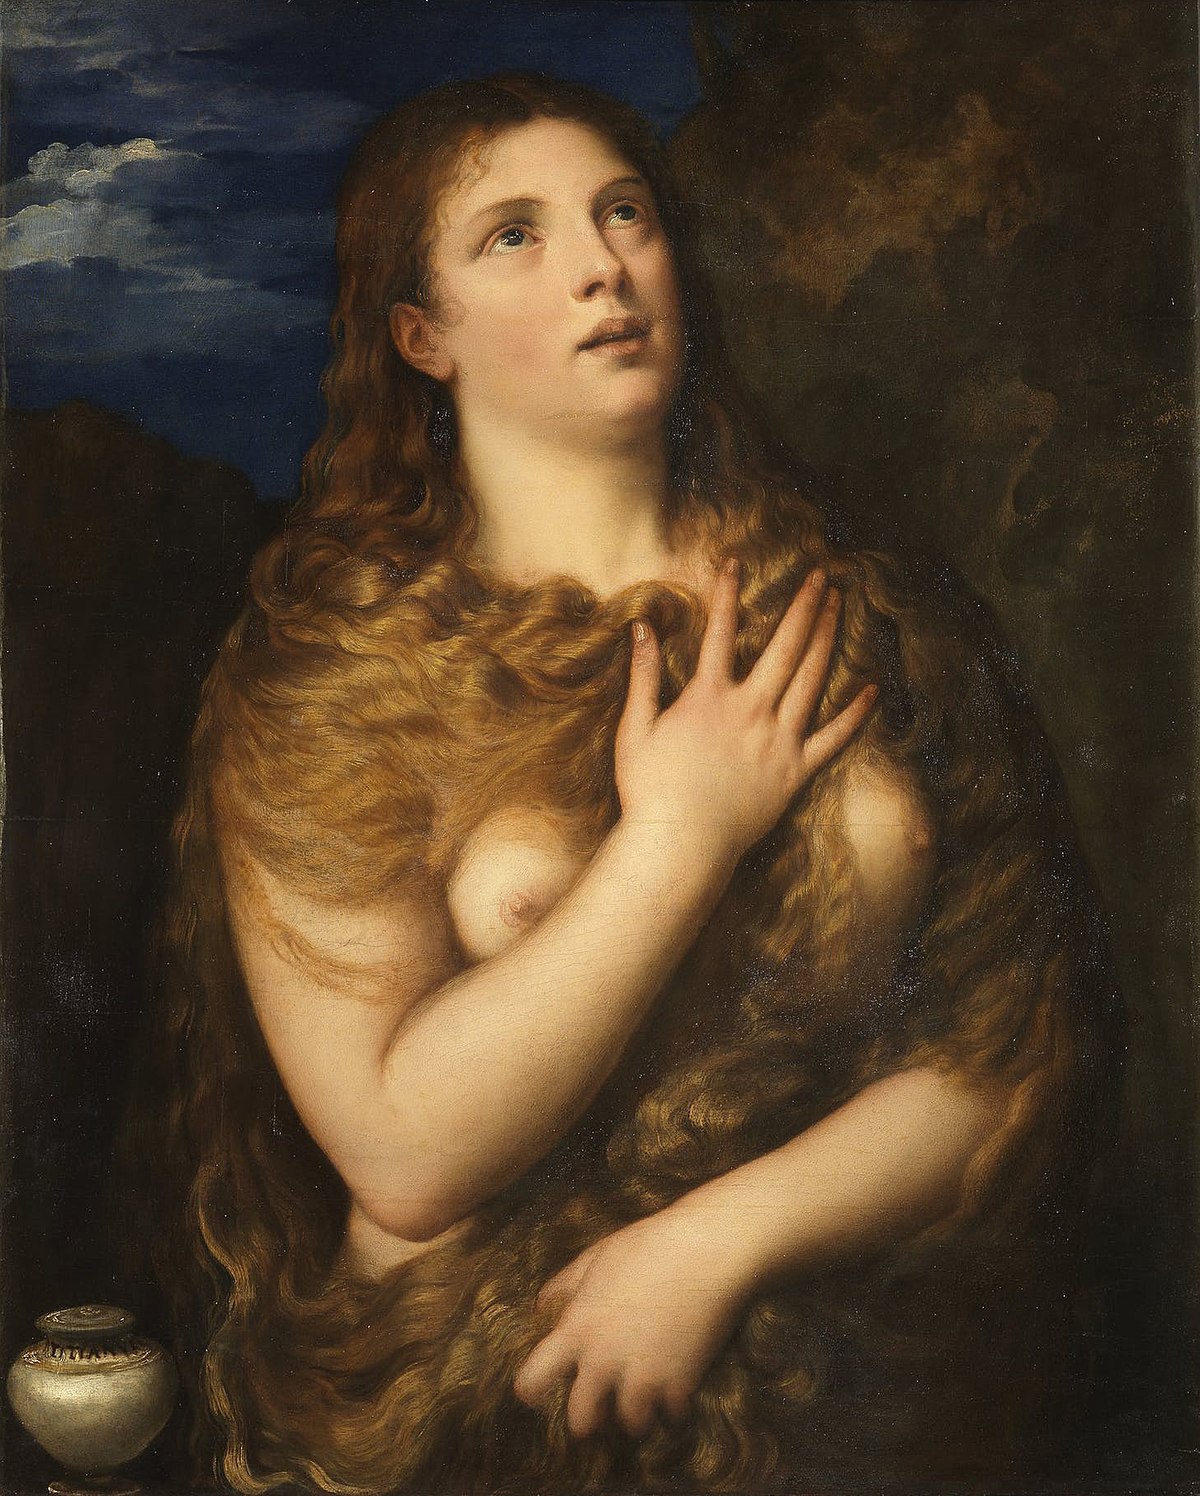 悔悛するマグダラのマリア (ティツィアーノの絵画) - Wikipedia